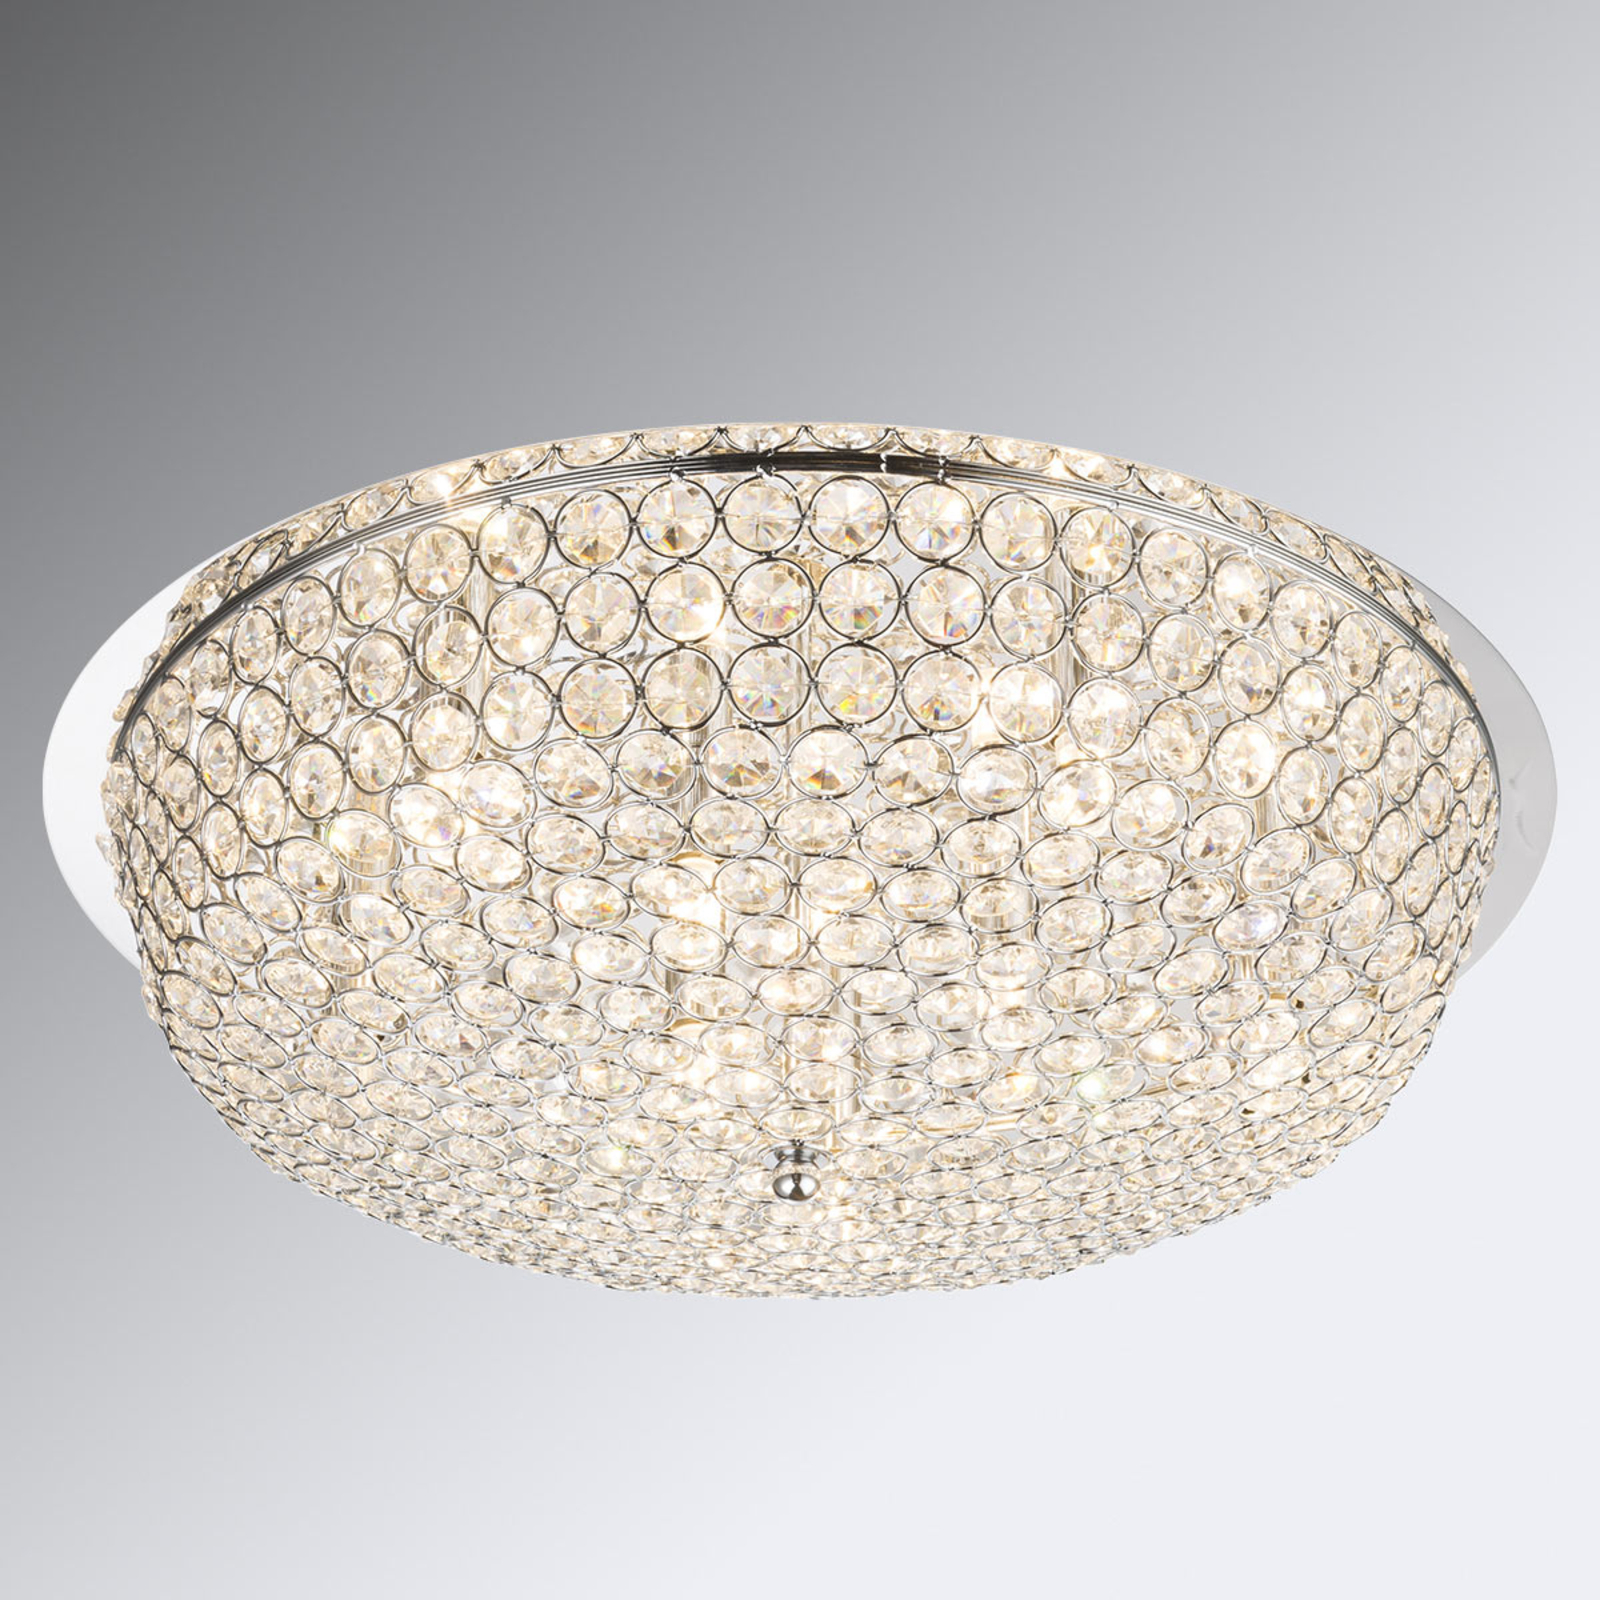 Kristallen plafondlamp Emilia met lampen | Lampen24.be